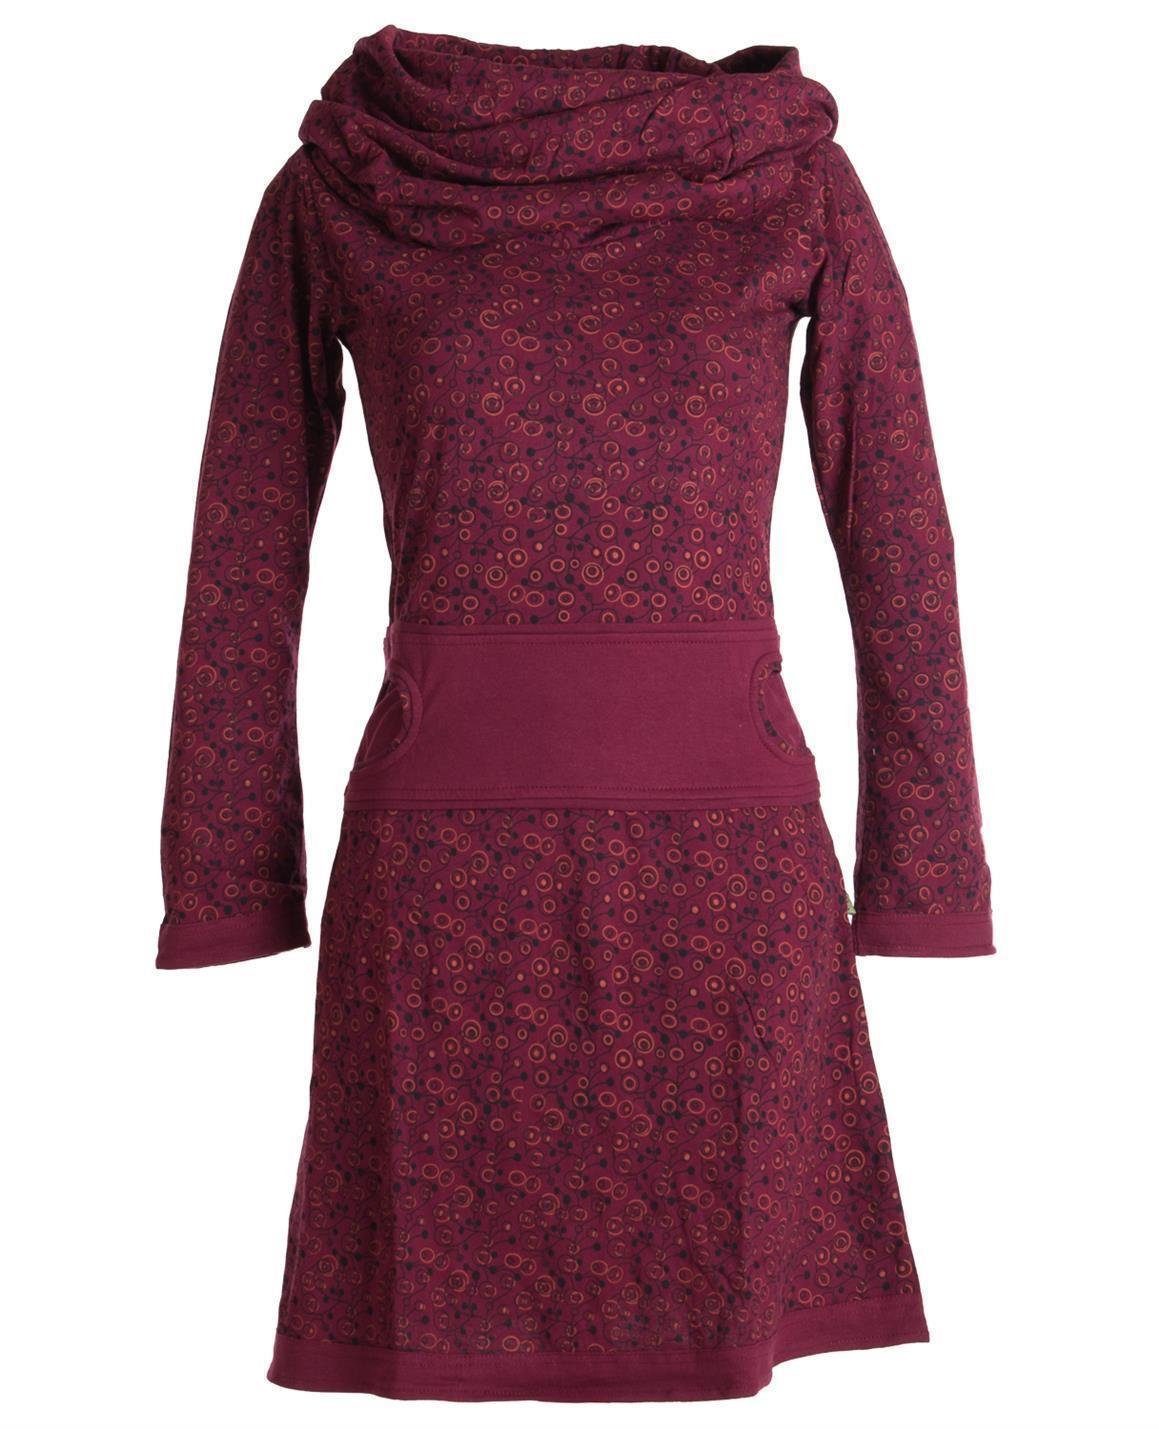 Vishes Jerseykleid Bedrucktes Kleid aus Baumwolle mit Schalkragen Ethno, Goa, Boho, Hippie Style dunkelrot